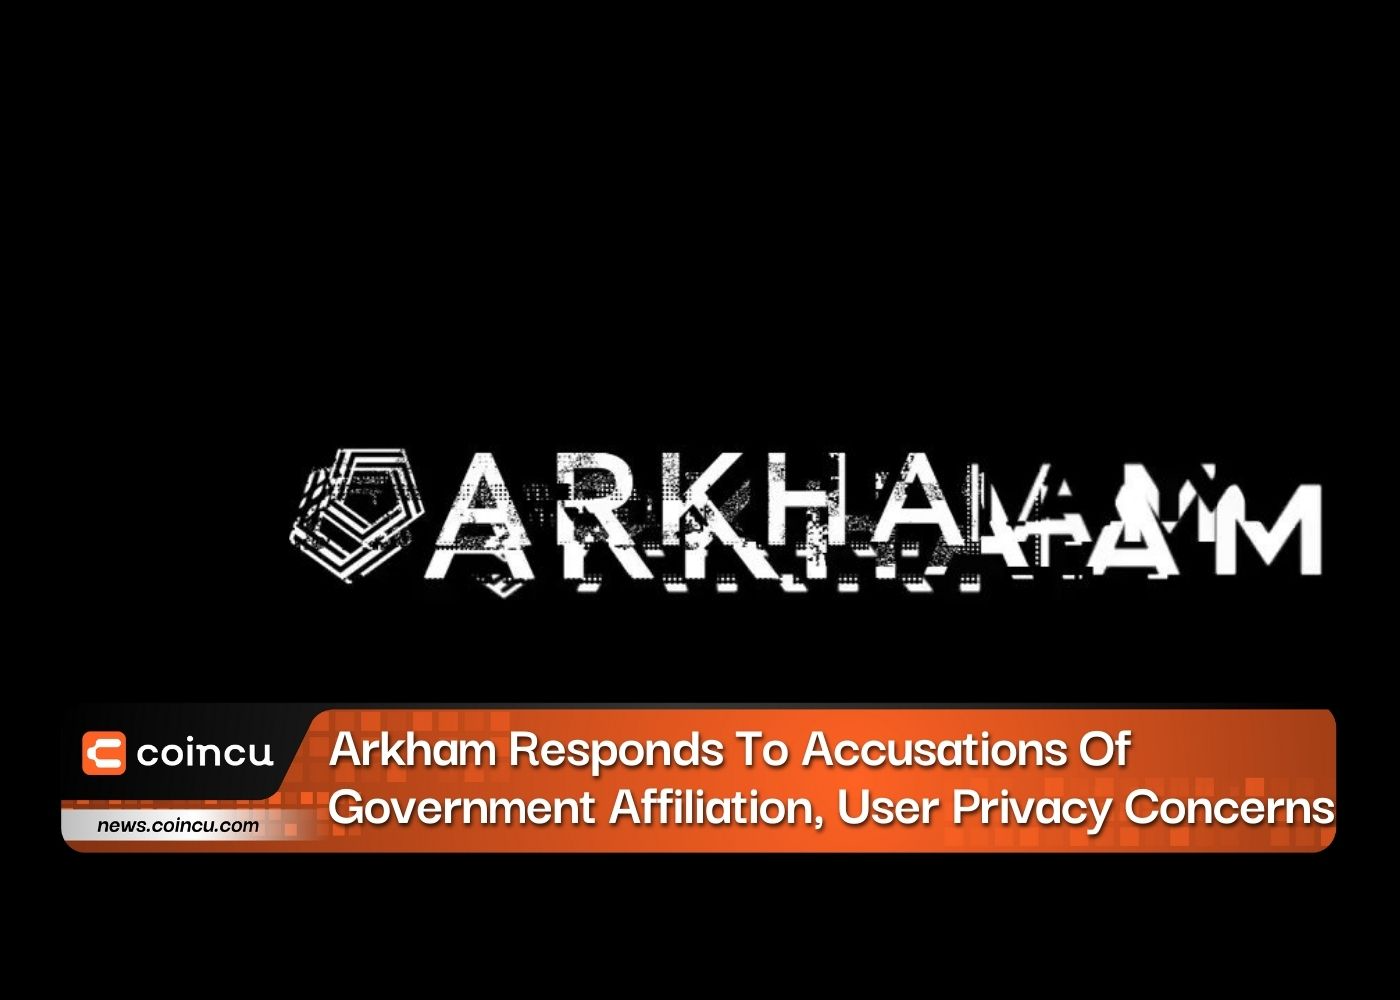 Arkham responde a acusações de afiliação governamental e preocupações com a privacidade do usuário